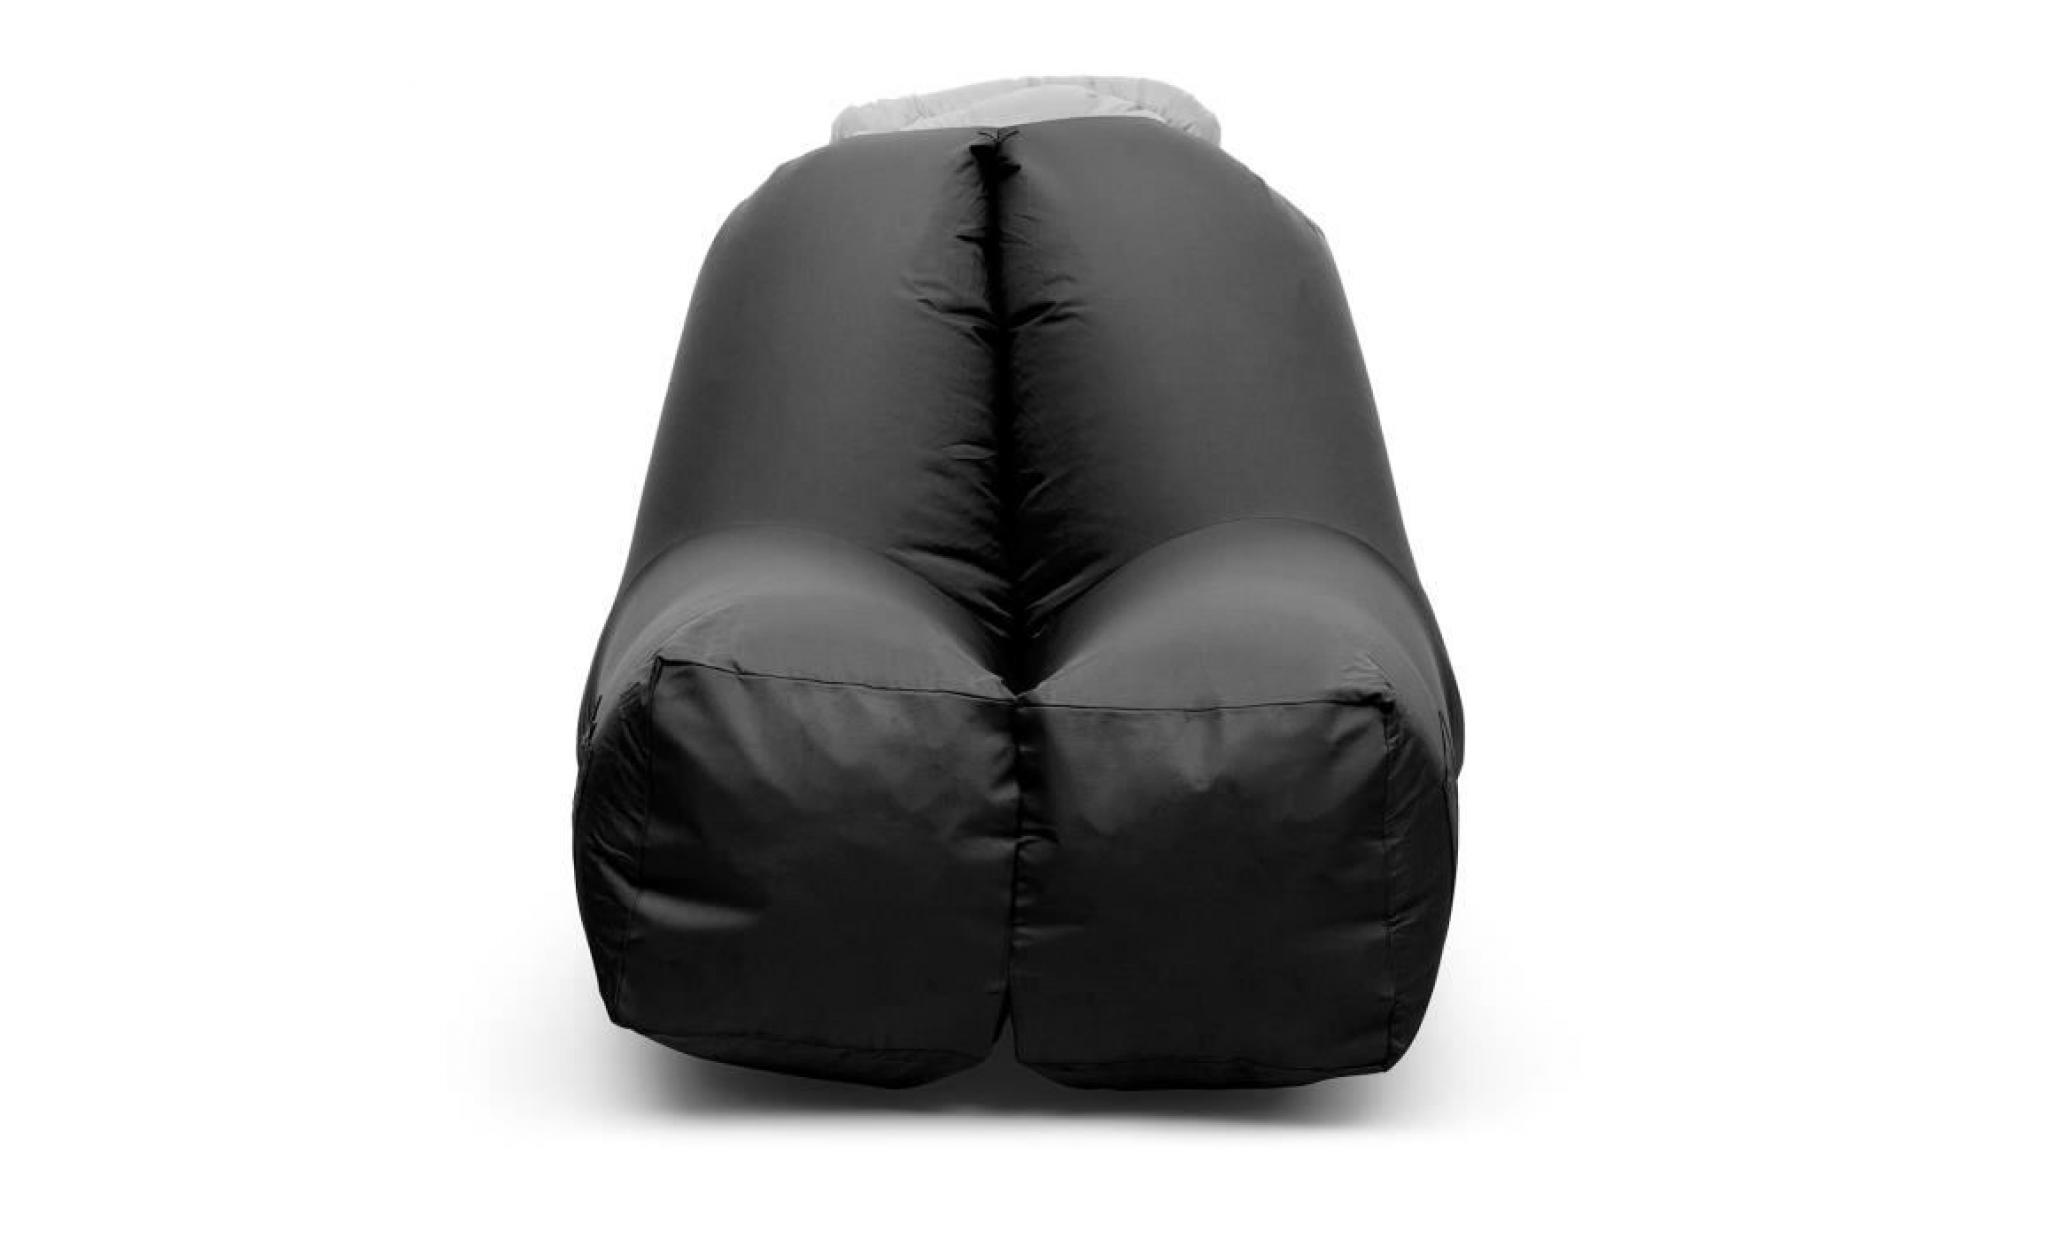 blumfeldt airchair fauteuil gonflable  de jardin 80 x 80 x 100cm   sac à dos de transport lavable inclus   housse polyester   noir pas cher